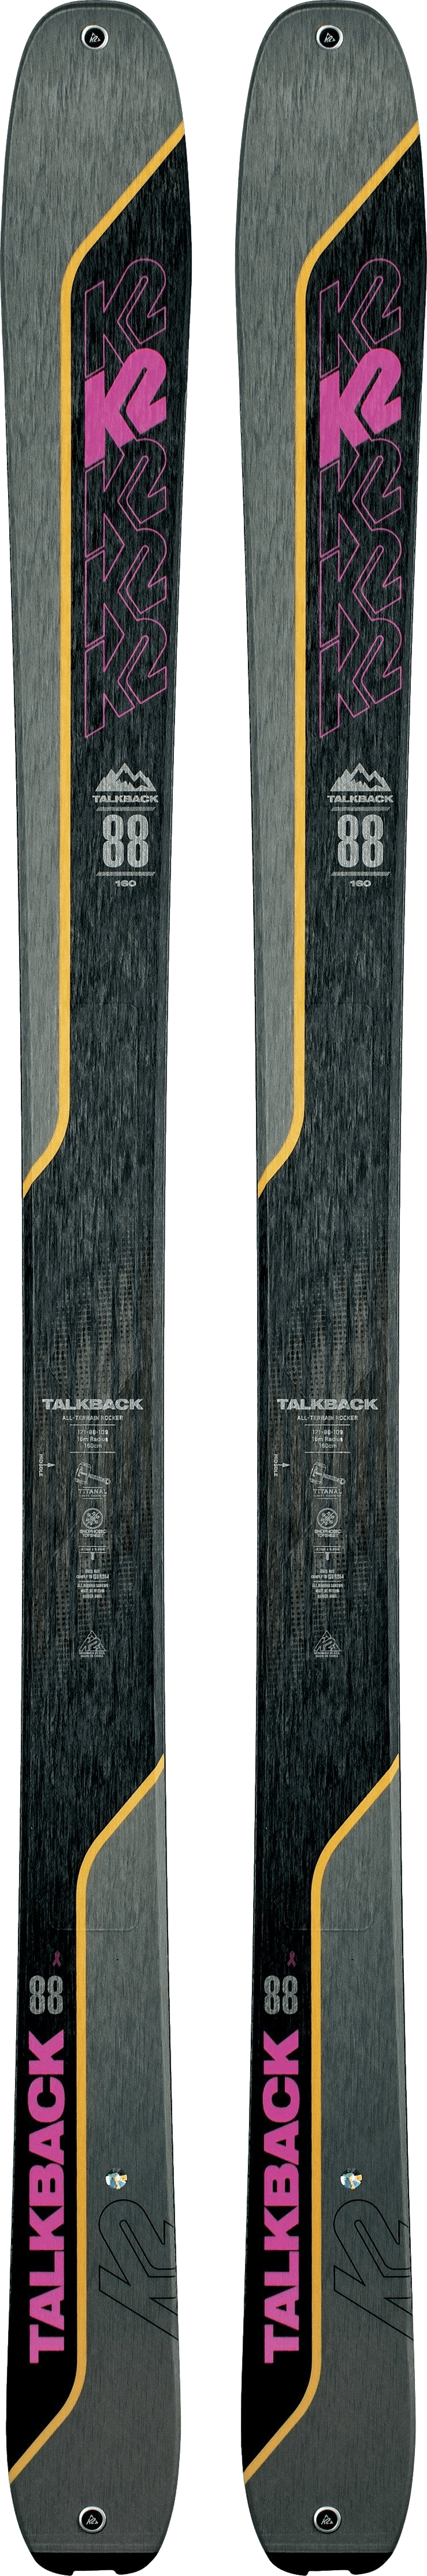 K2 Talkback 88 Skis · Women's · 2022